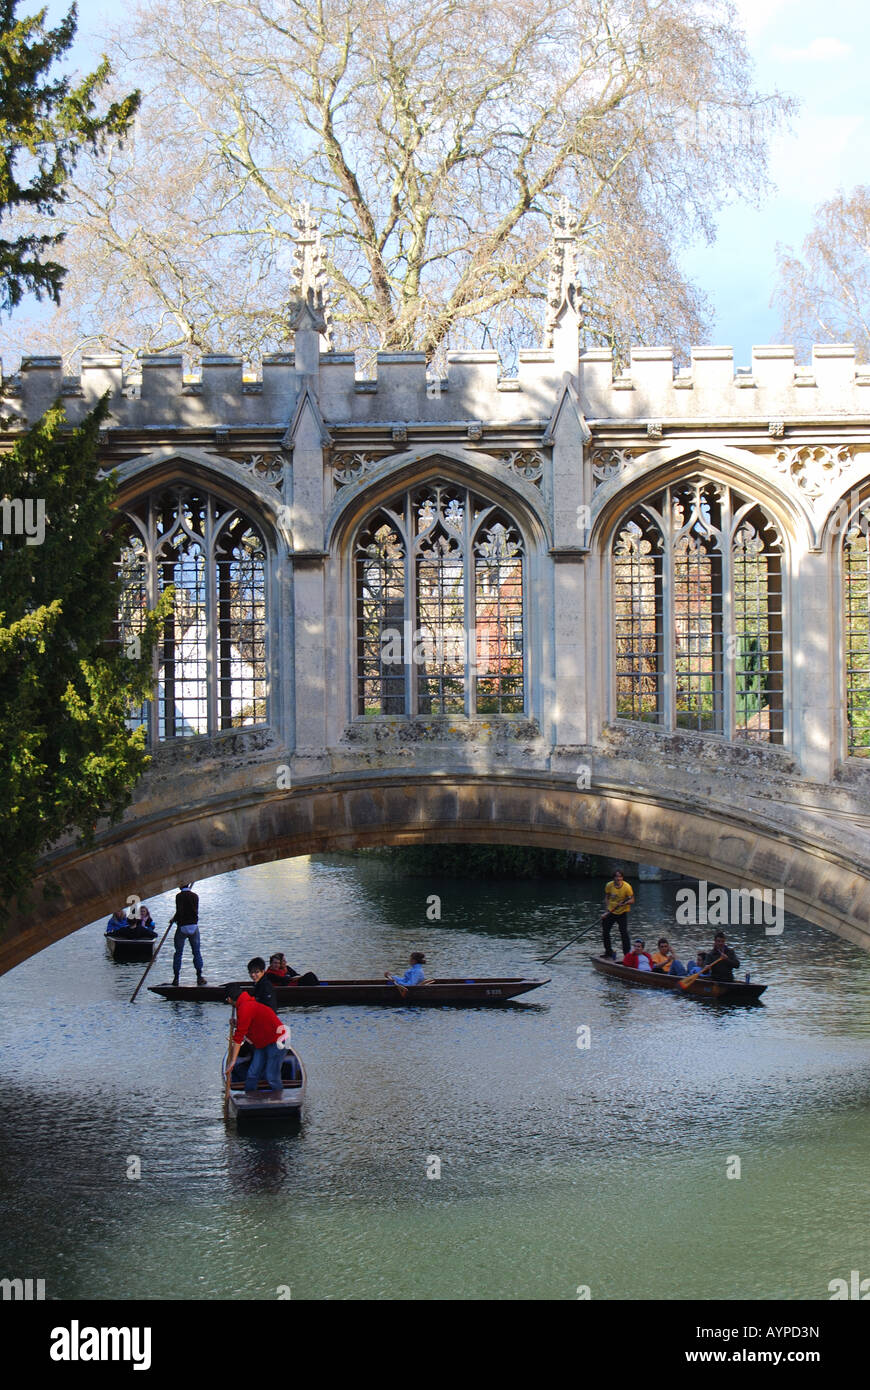 Barques sur la rivière Cam, le Pont des Soupirs, St John's College, Cambridge, Cambridgeshire, Angleterre, Royaume-Uni Banque D'Images